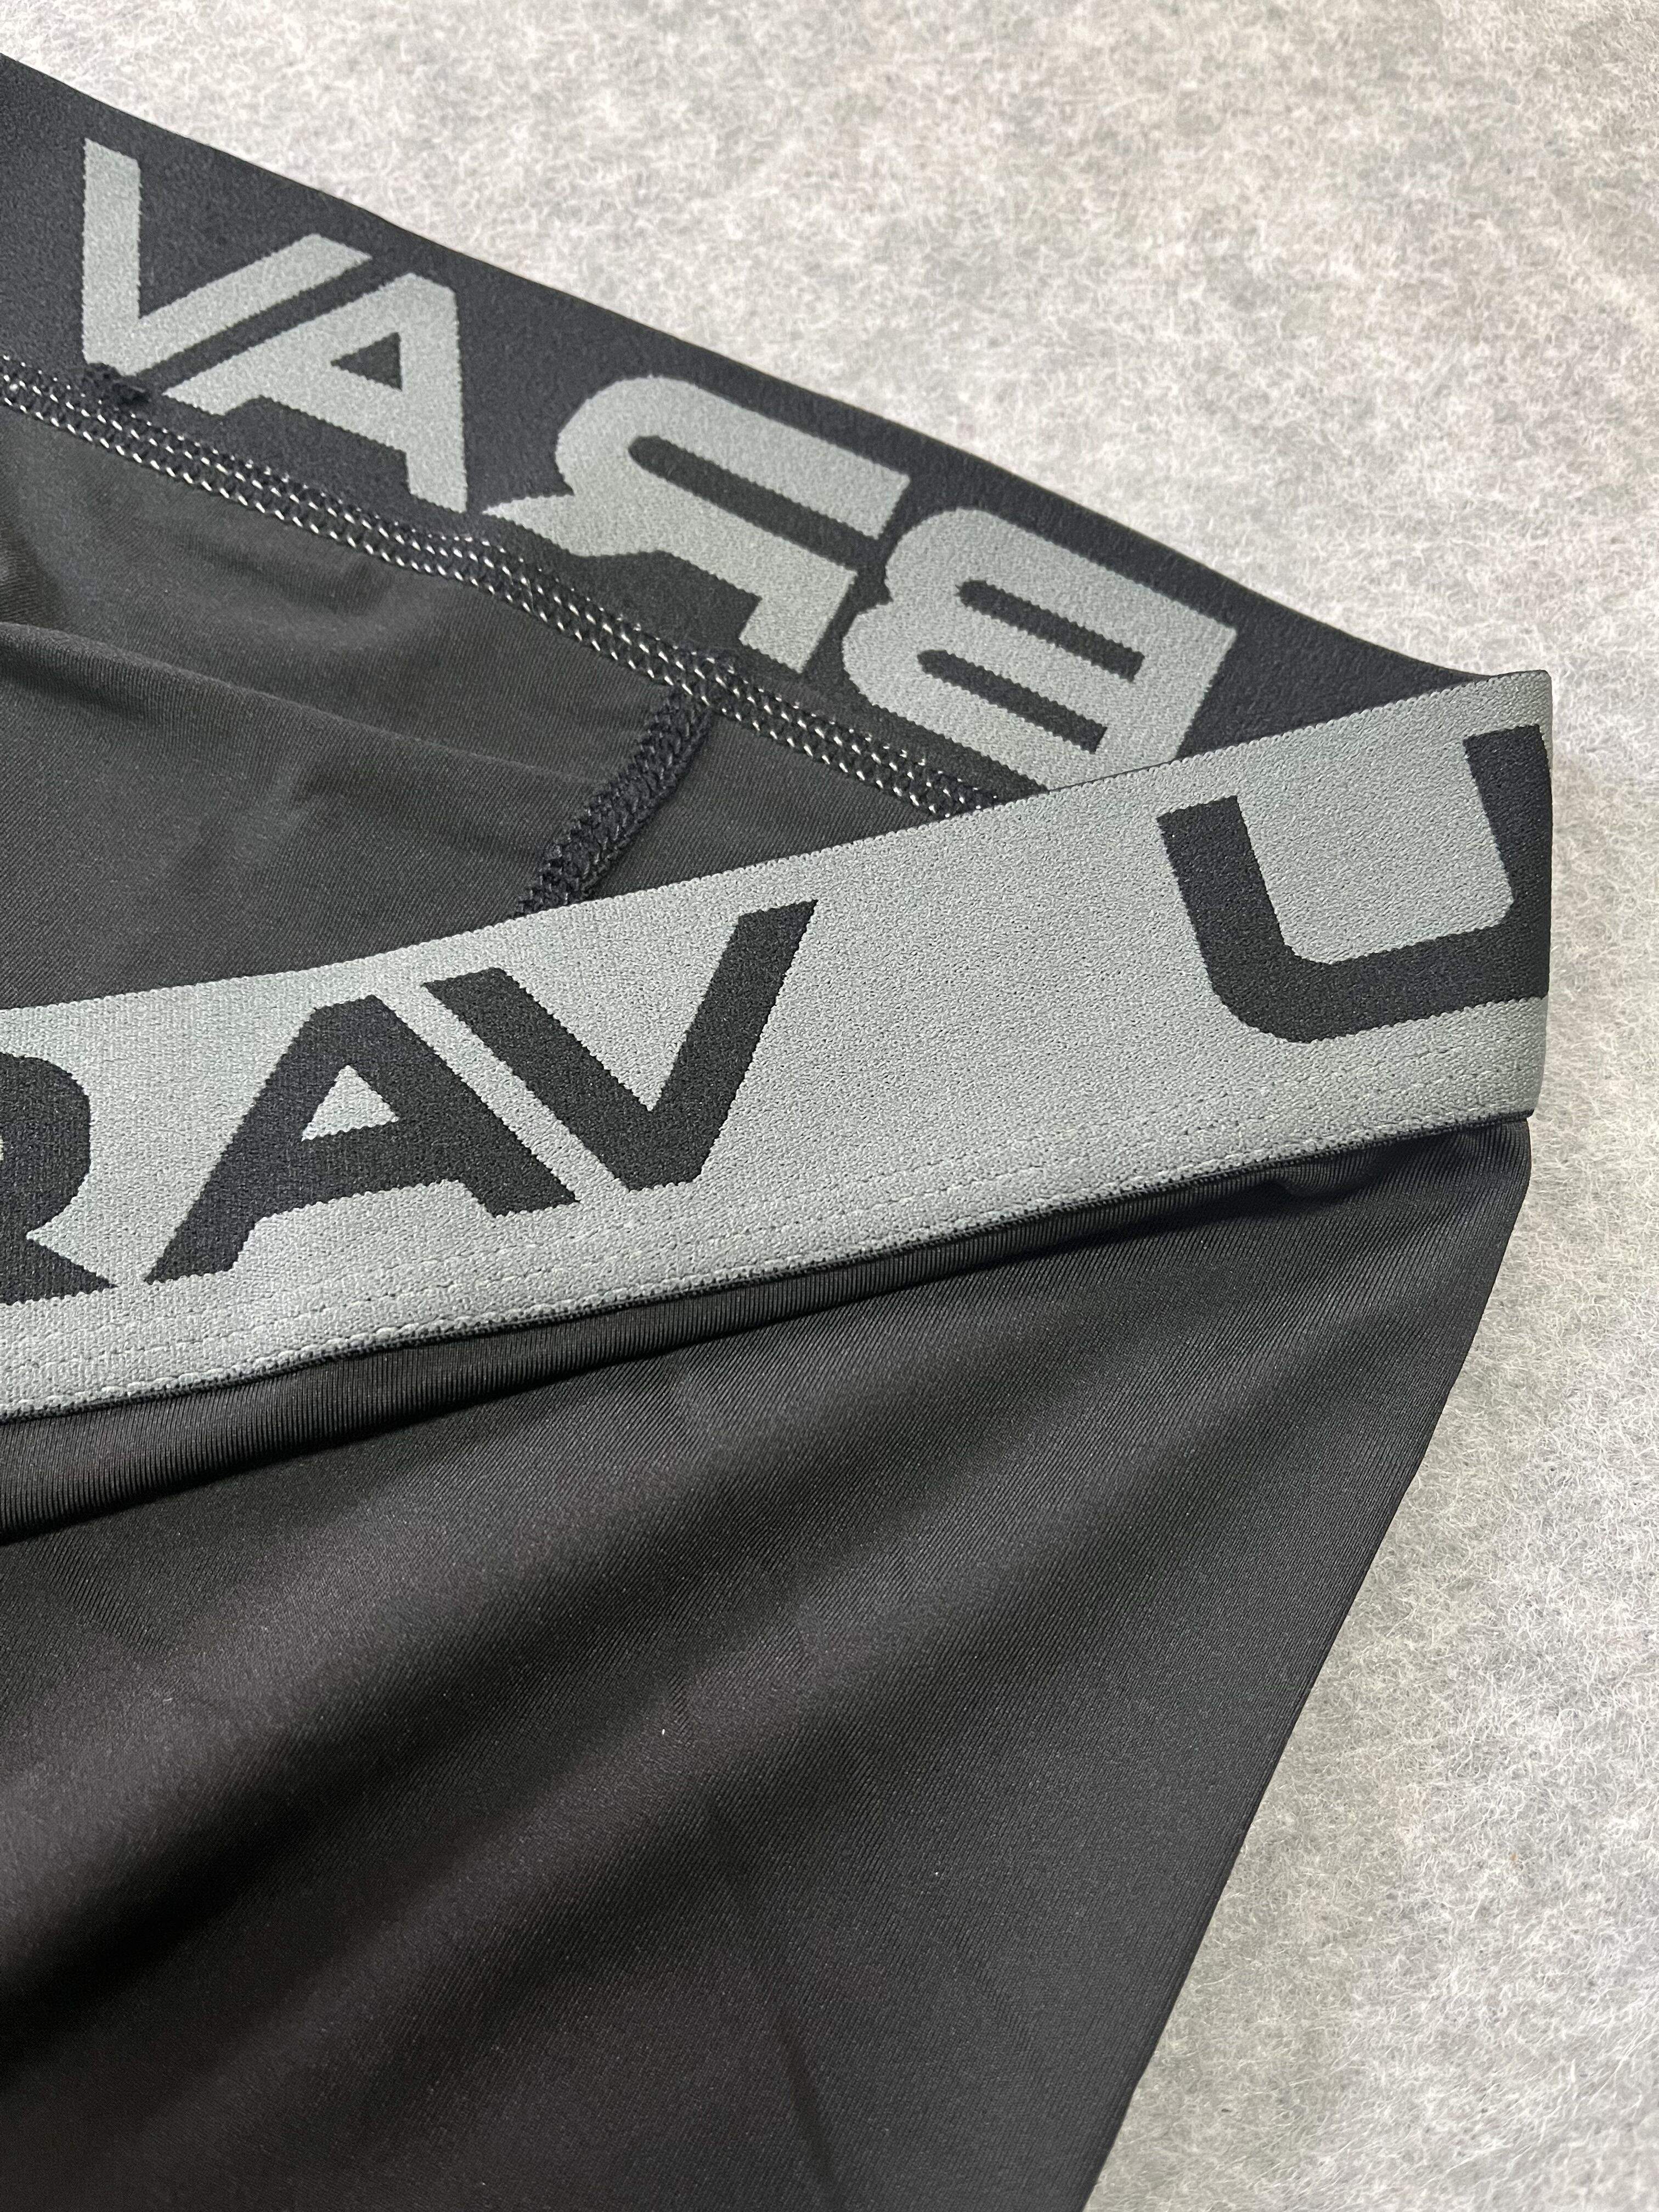 Uabrav Men's Football Compression Pants - Black Black / M